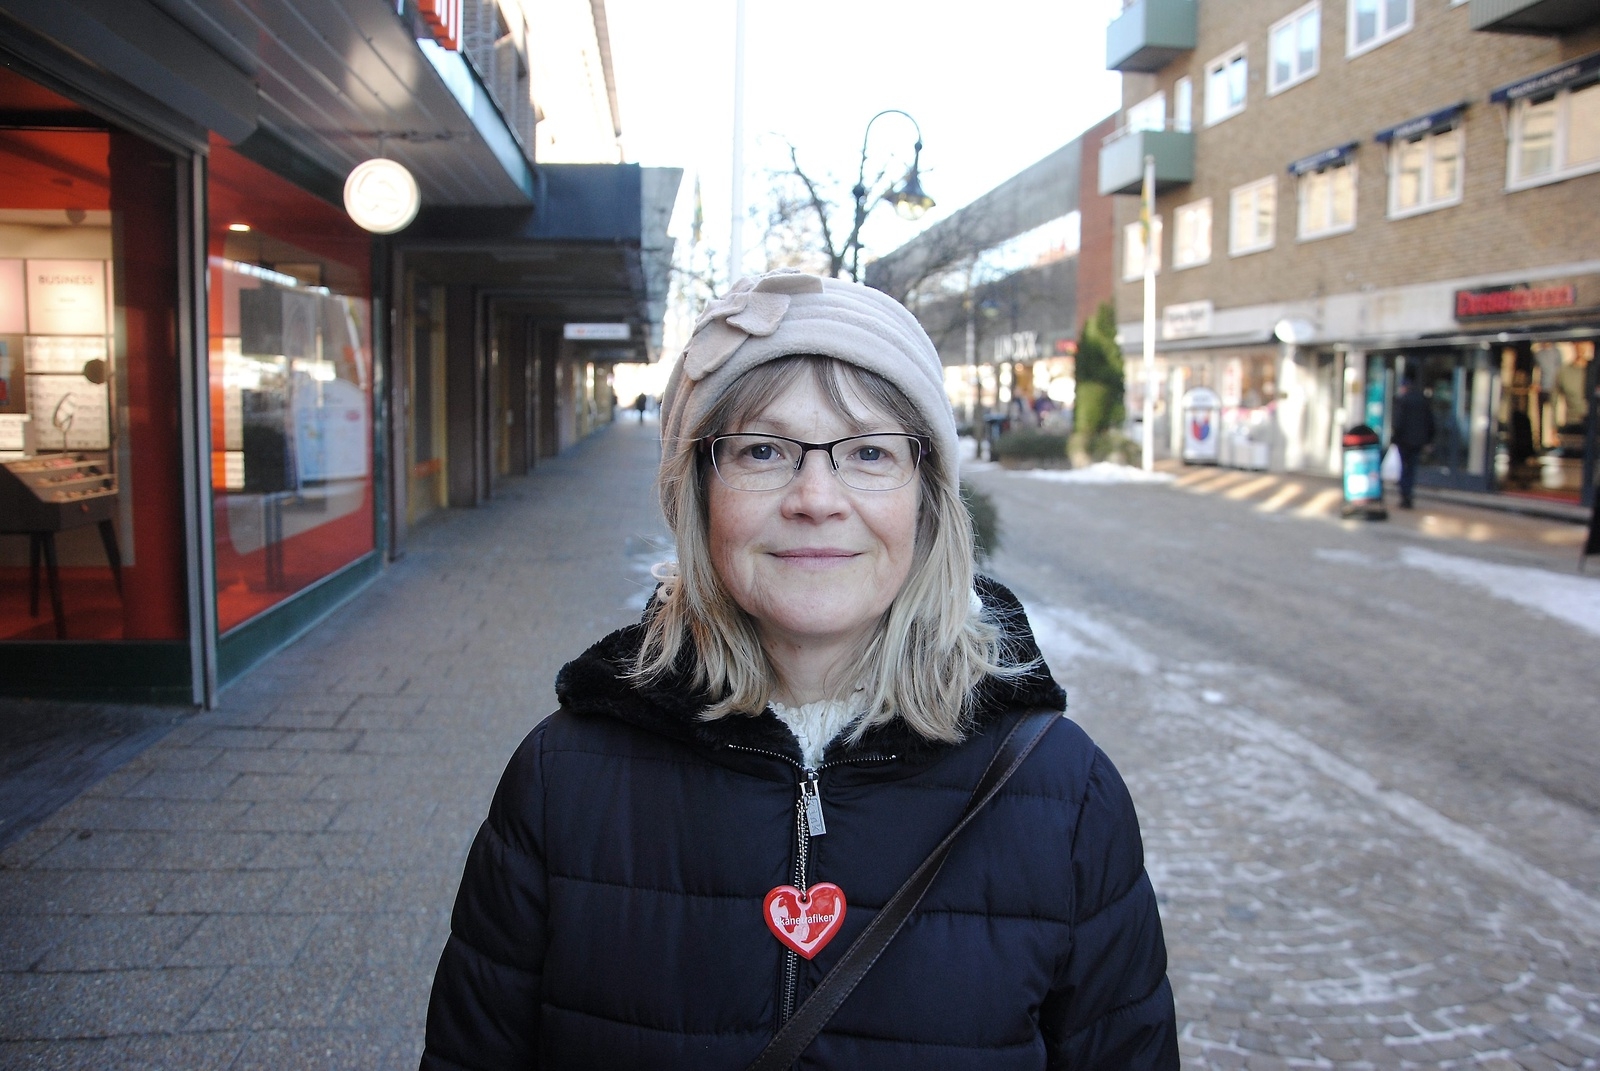 Yvonne Wikström, Tyringe:
- Jag är inte insatt och har ingen åsikt om det politiska läget.